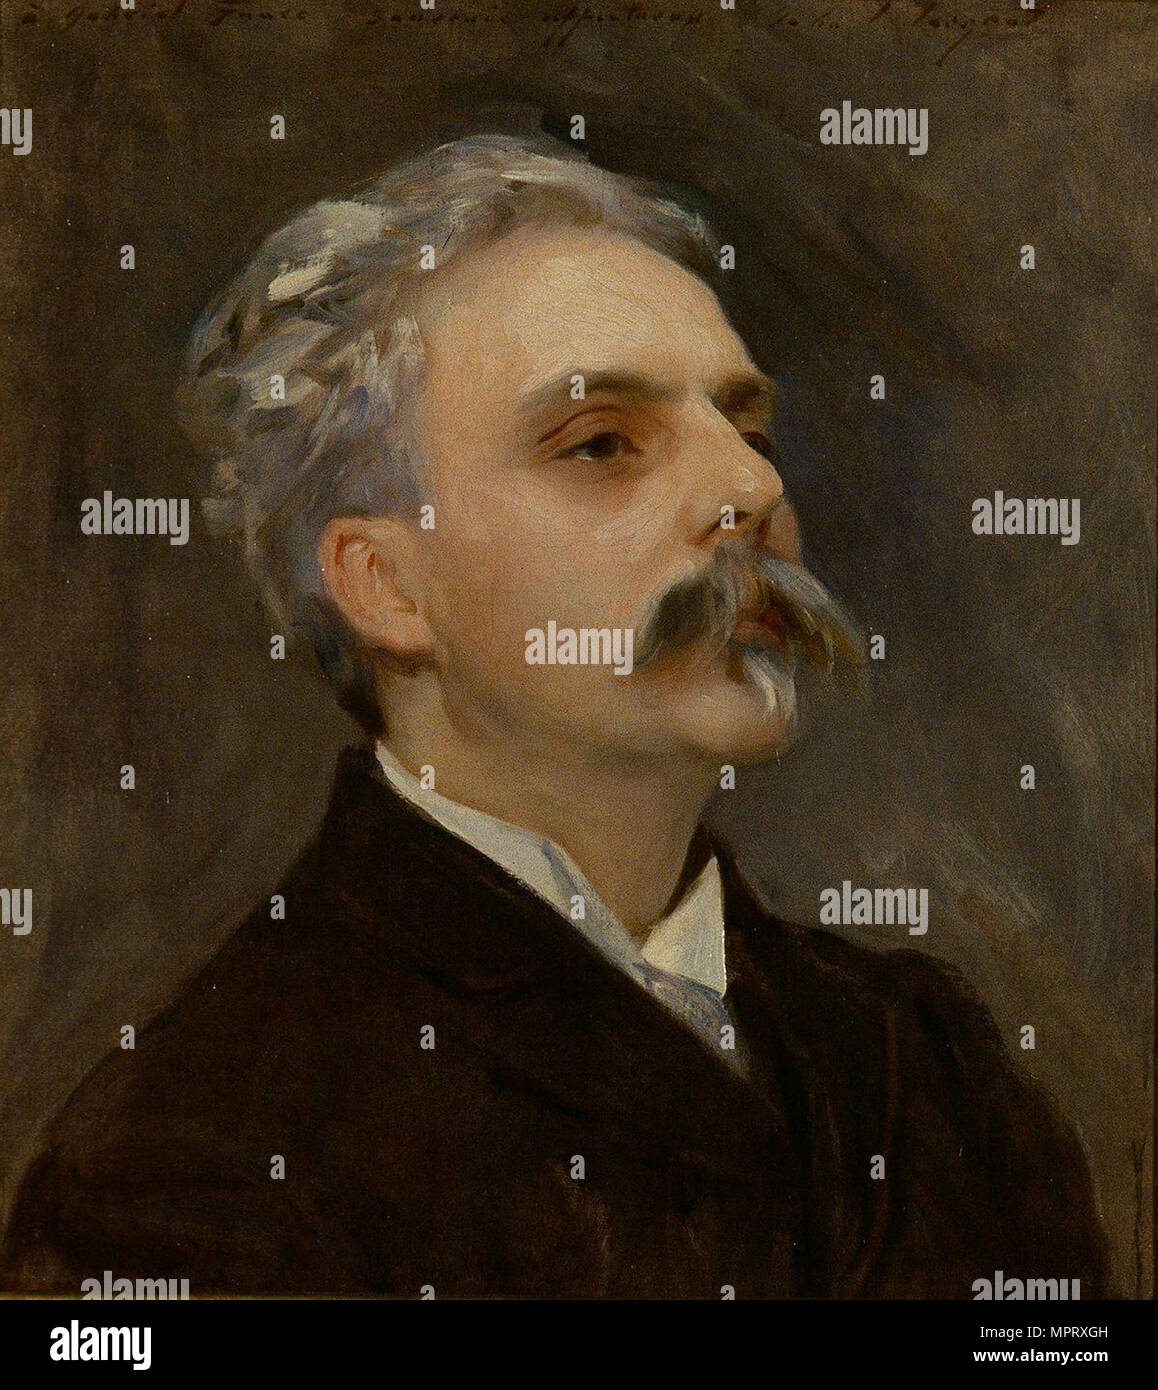 Portrait of the composer Gabriel Fauré (1845-1924). Stock Photo